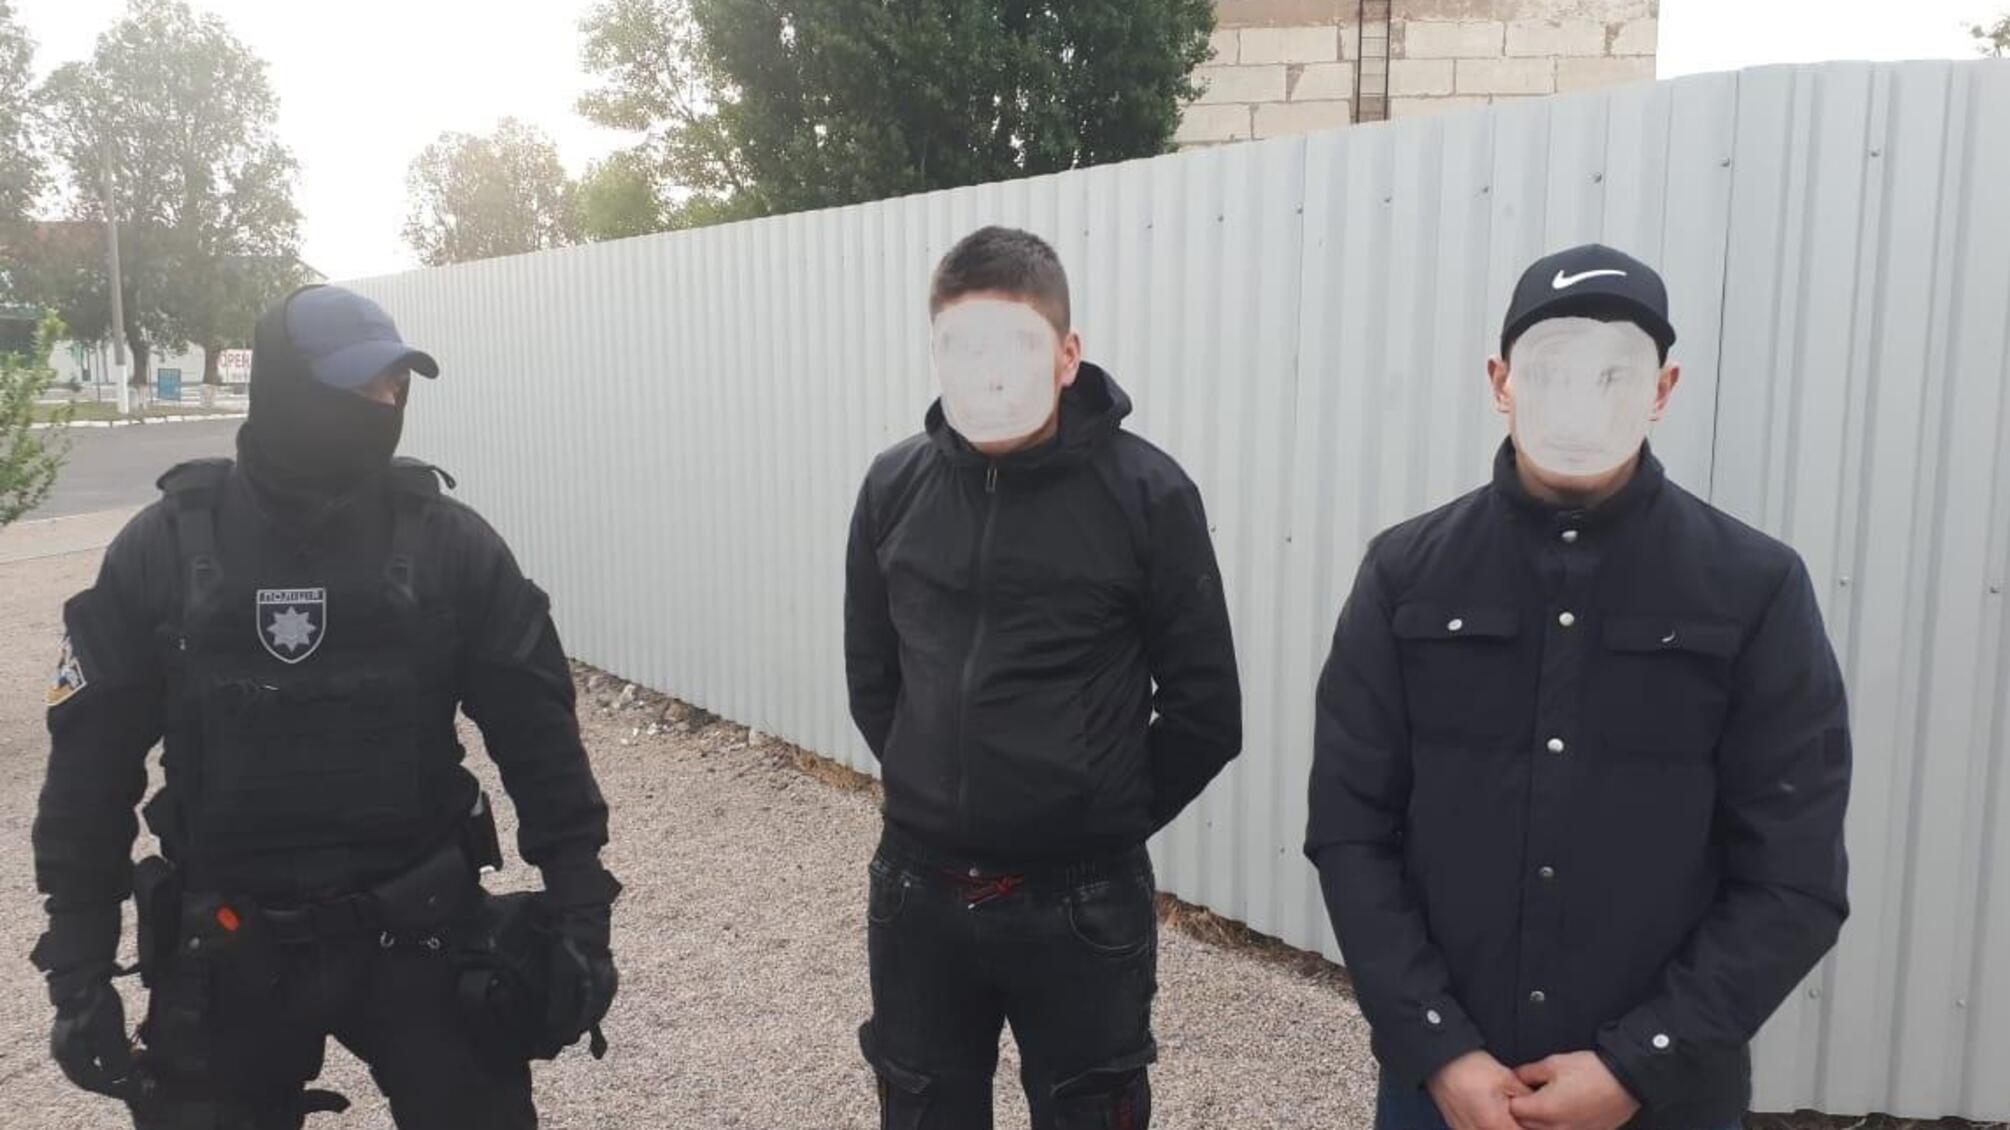 На Херсонщині поліція затримала кримінальний дует шахраїв-гастролерів